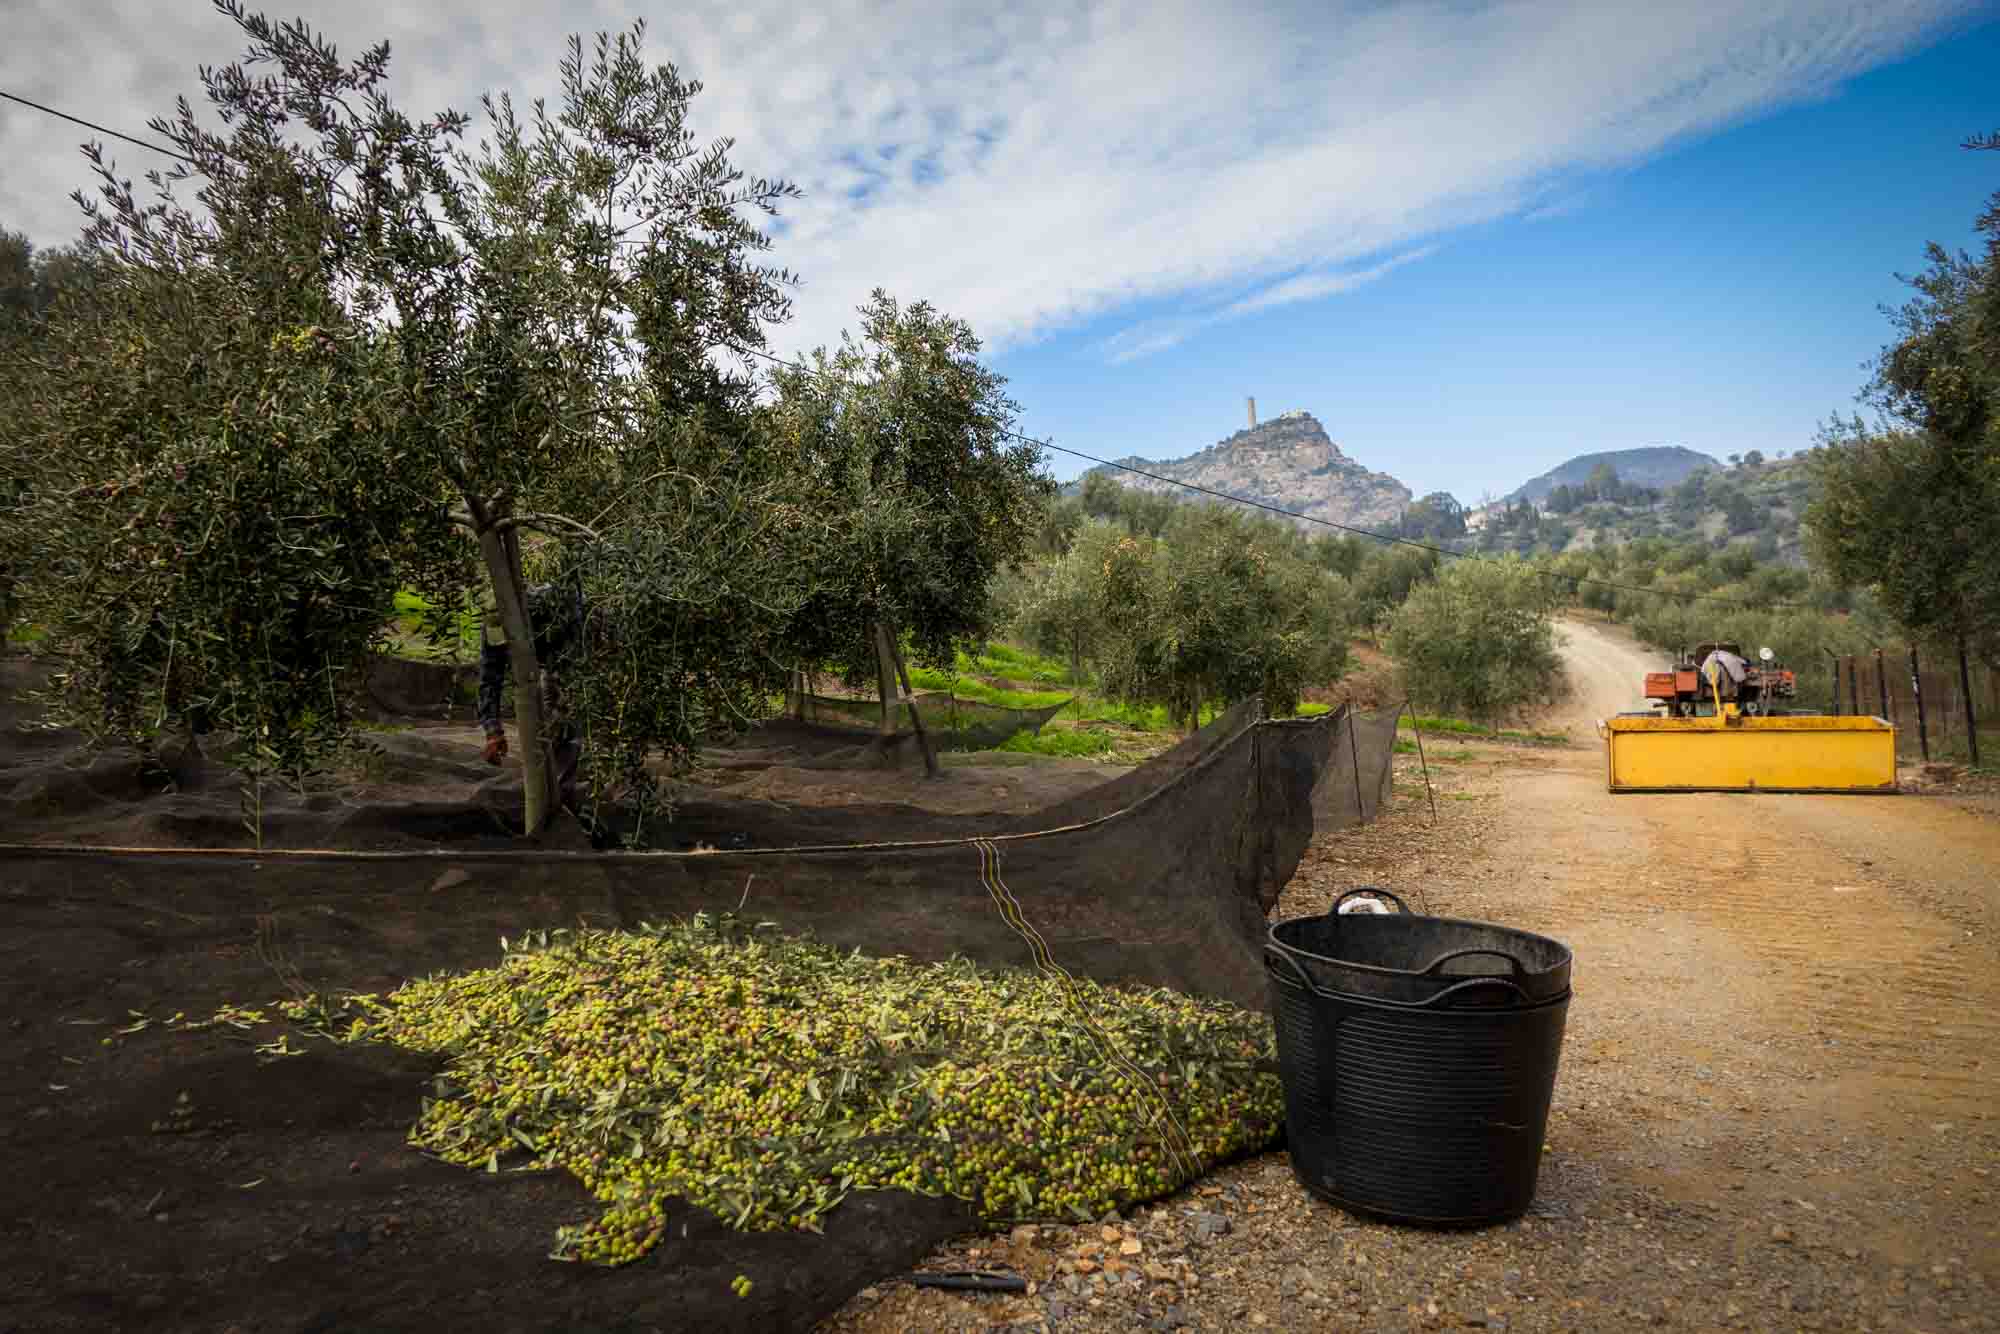 Recogida de la aceituna arbequina procedente de los olivos jóvenes en la Finca Lagar del Chorro en Álora en la provincia de Málaga